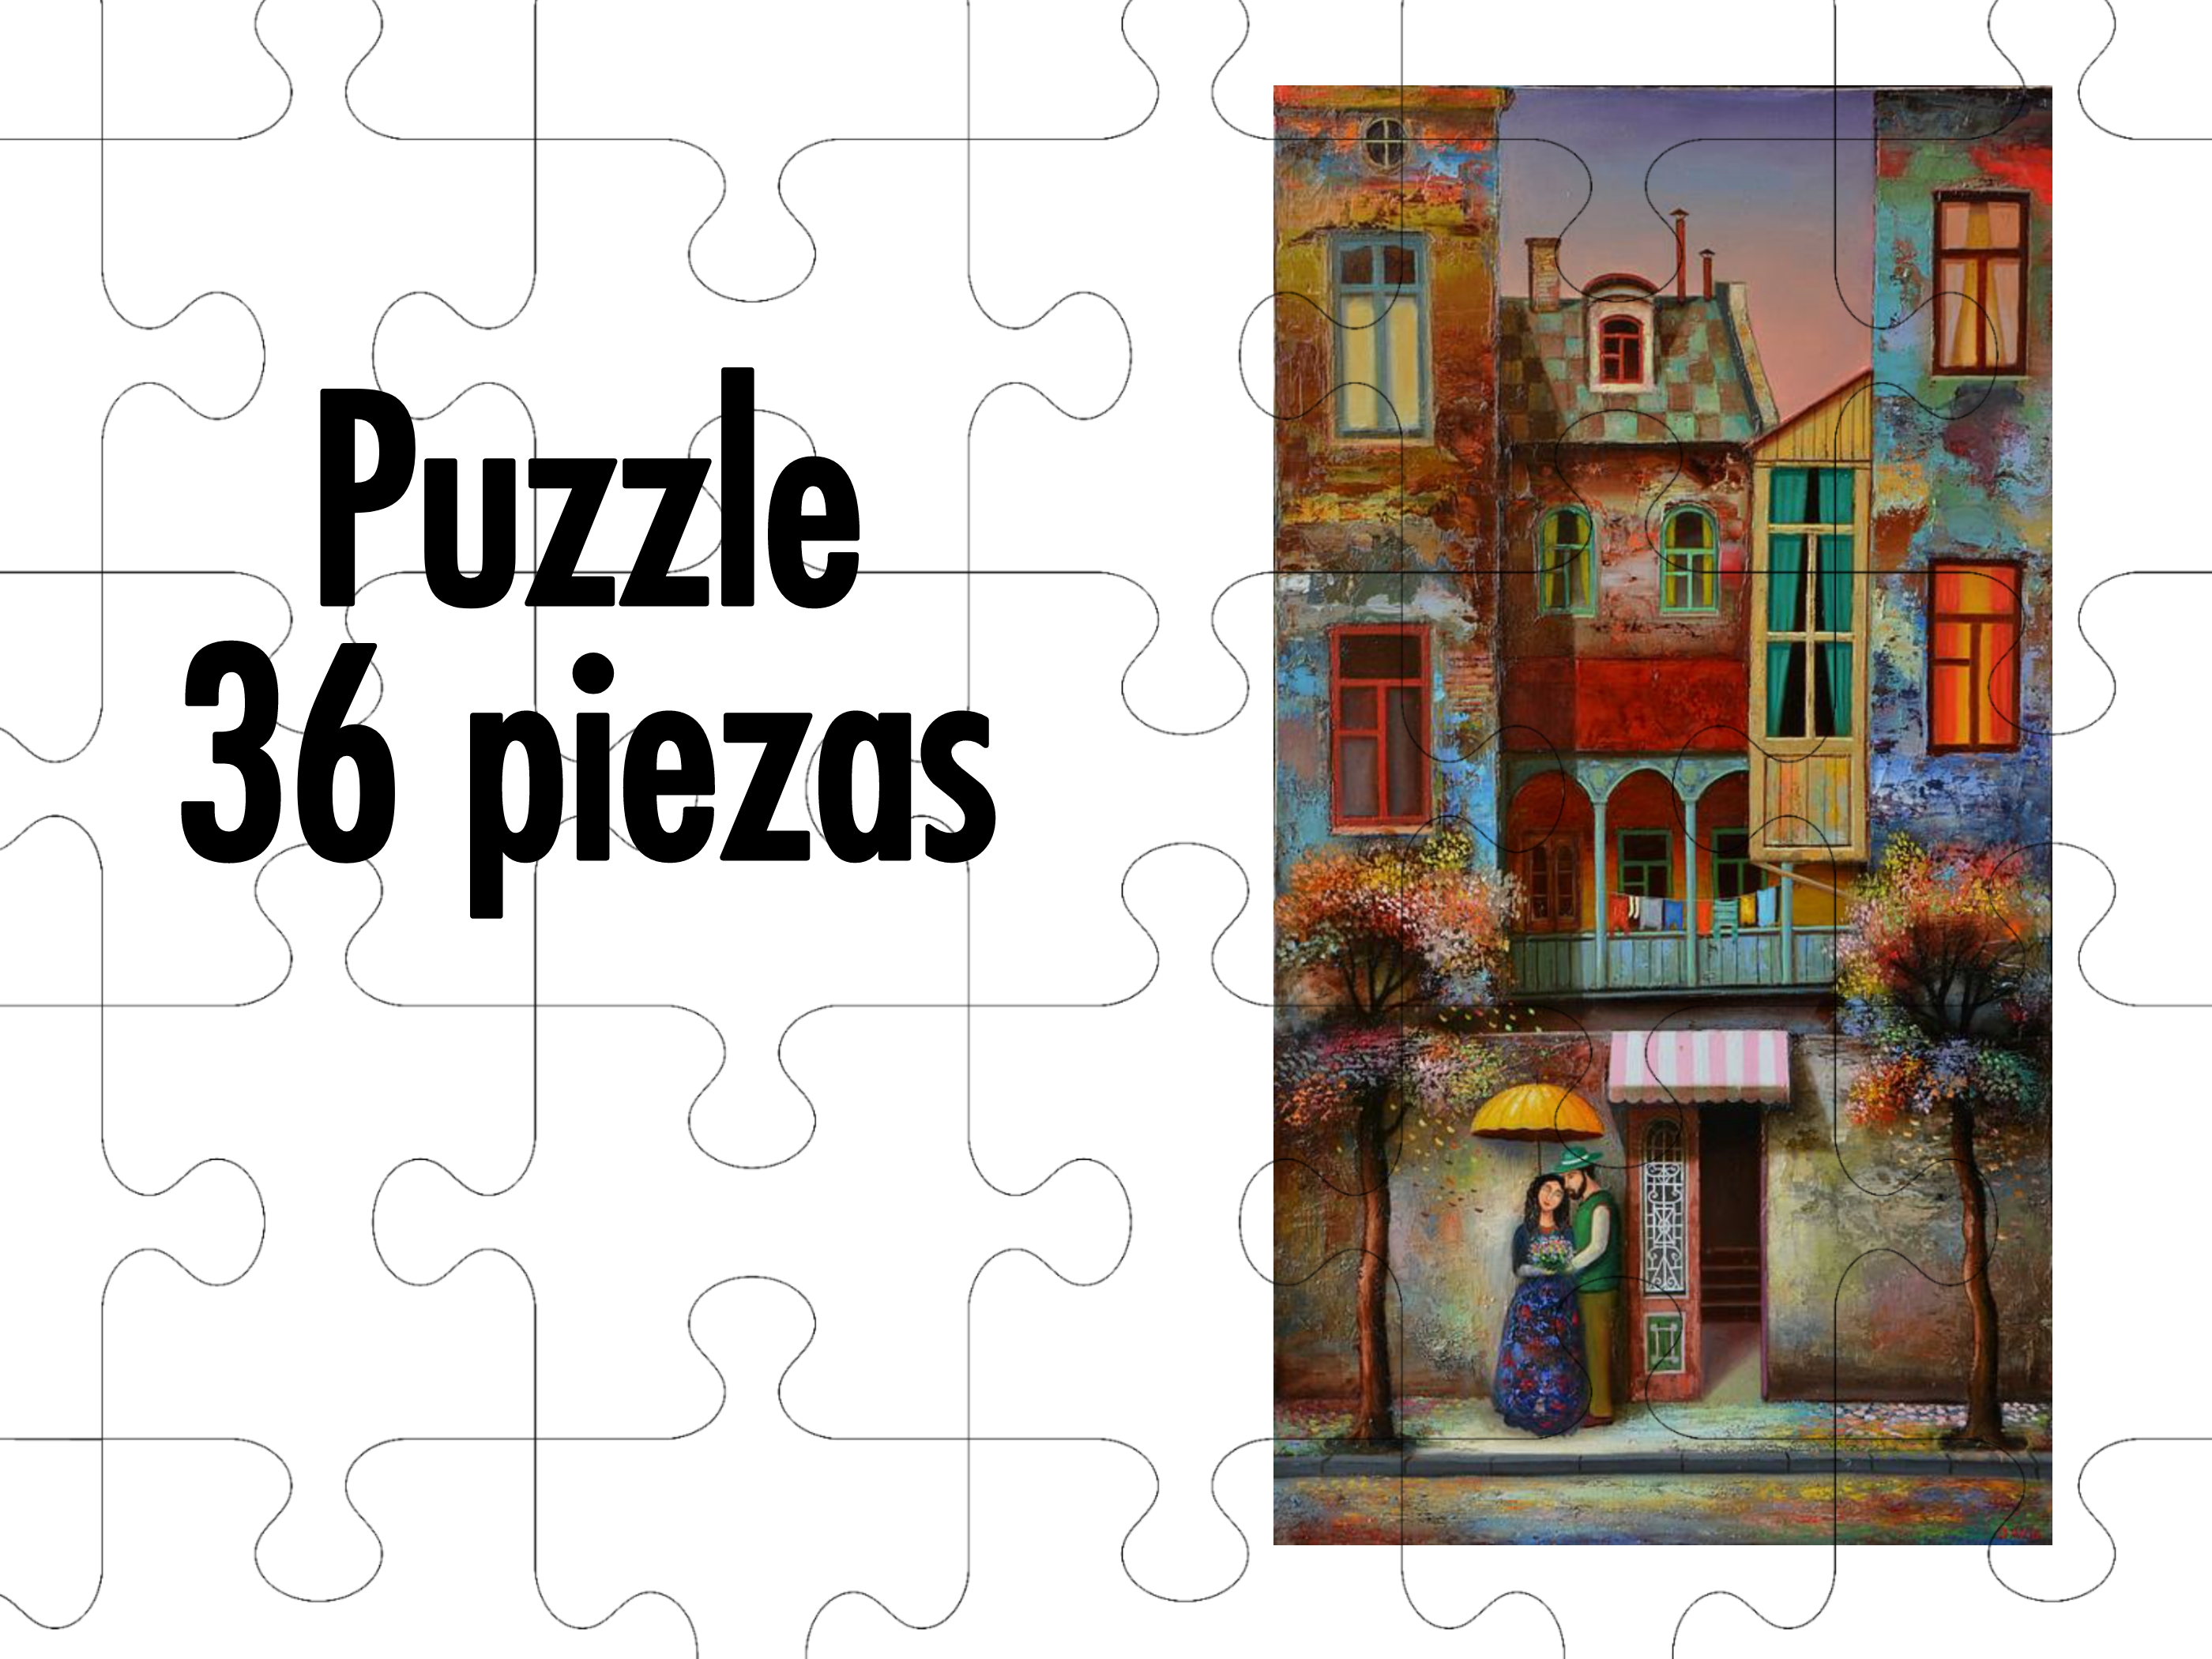 ¿Cuánto tardas en hacer esta puzzle?